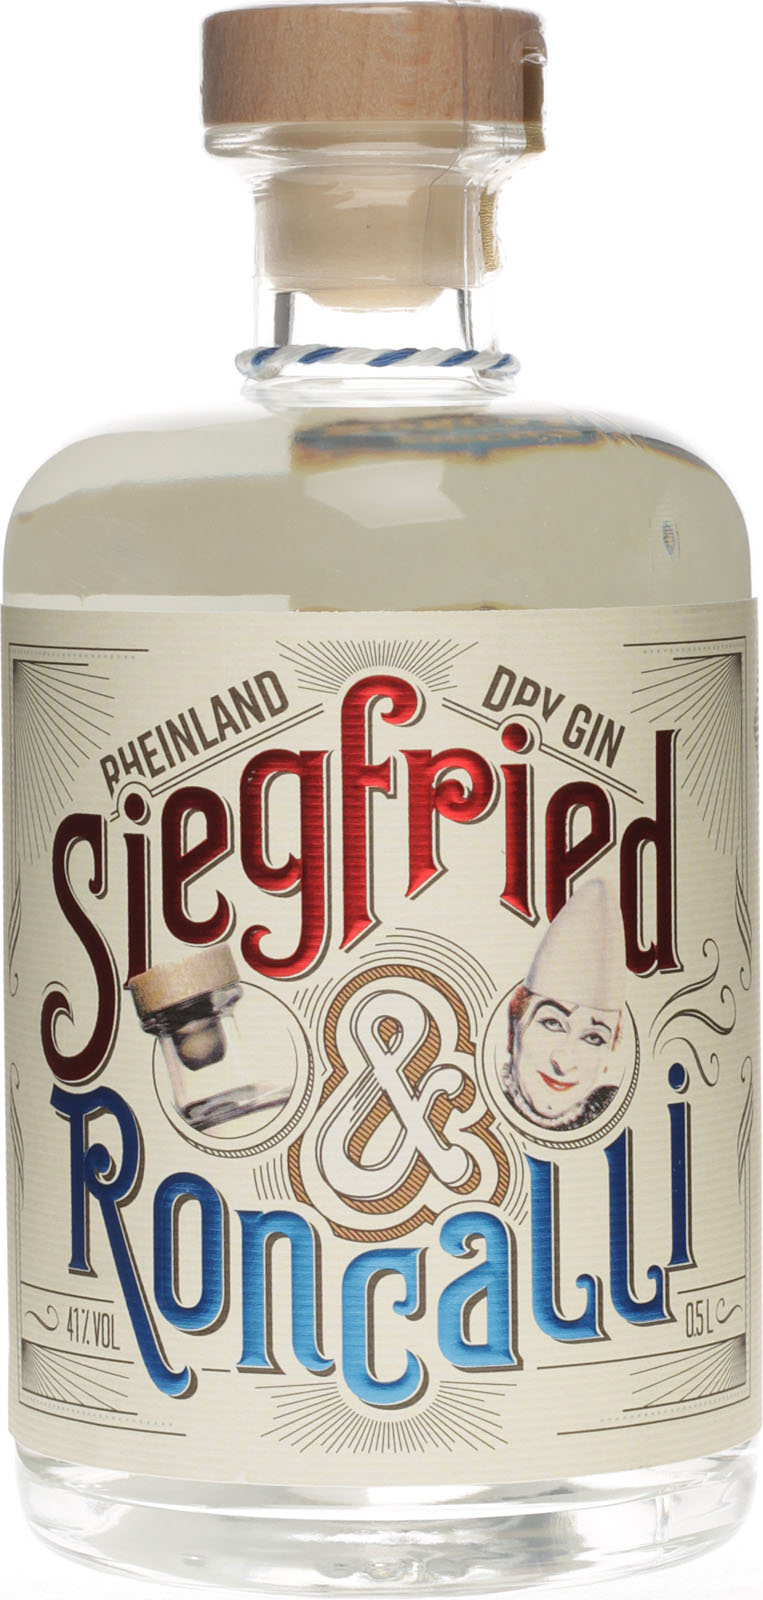 Liter Rheinland Roncalli Siegfried Gin Dry Edition 0,5